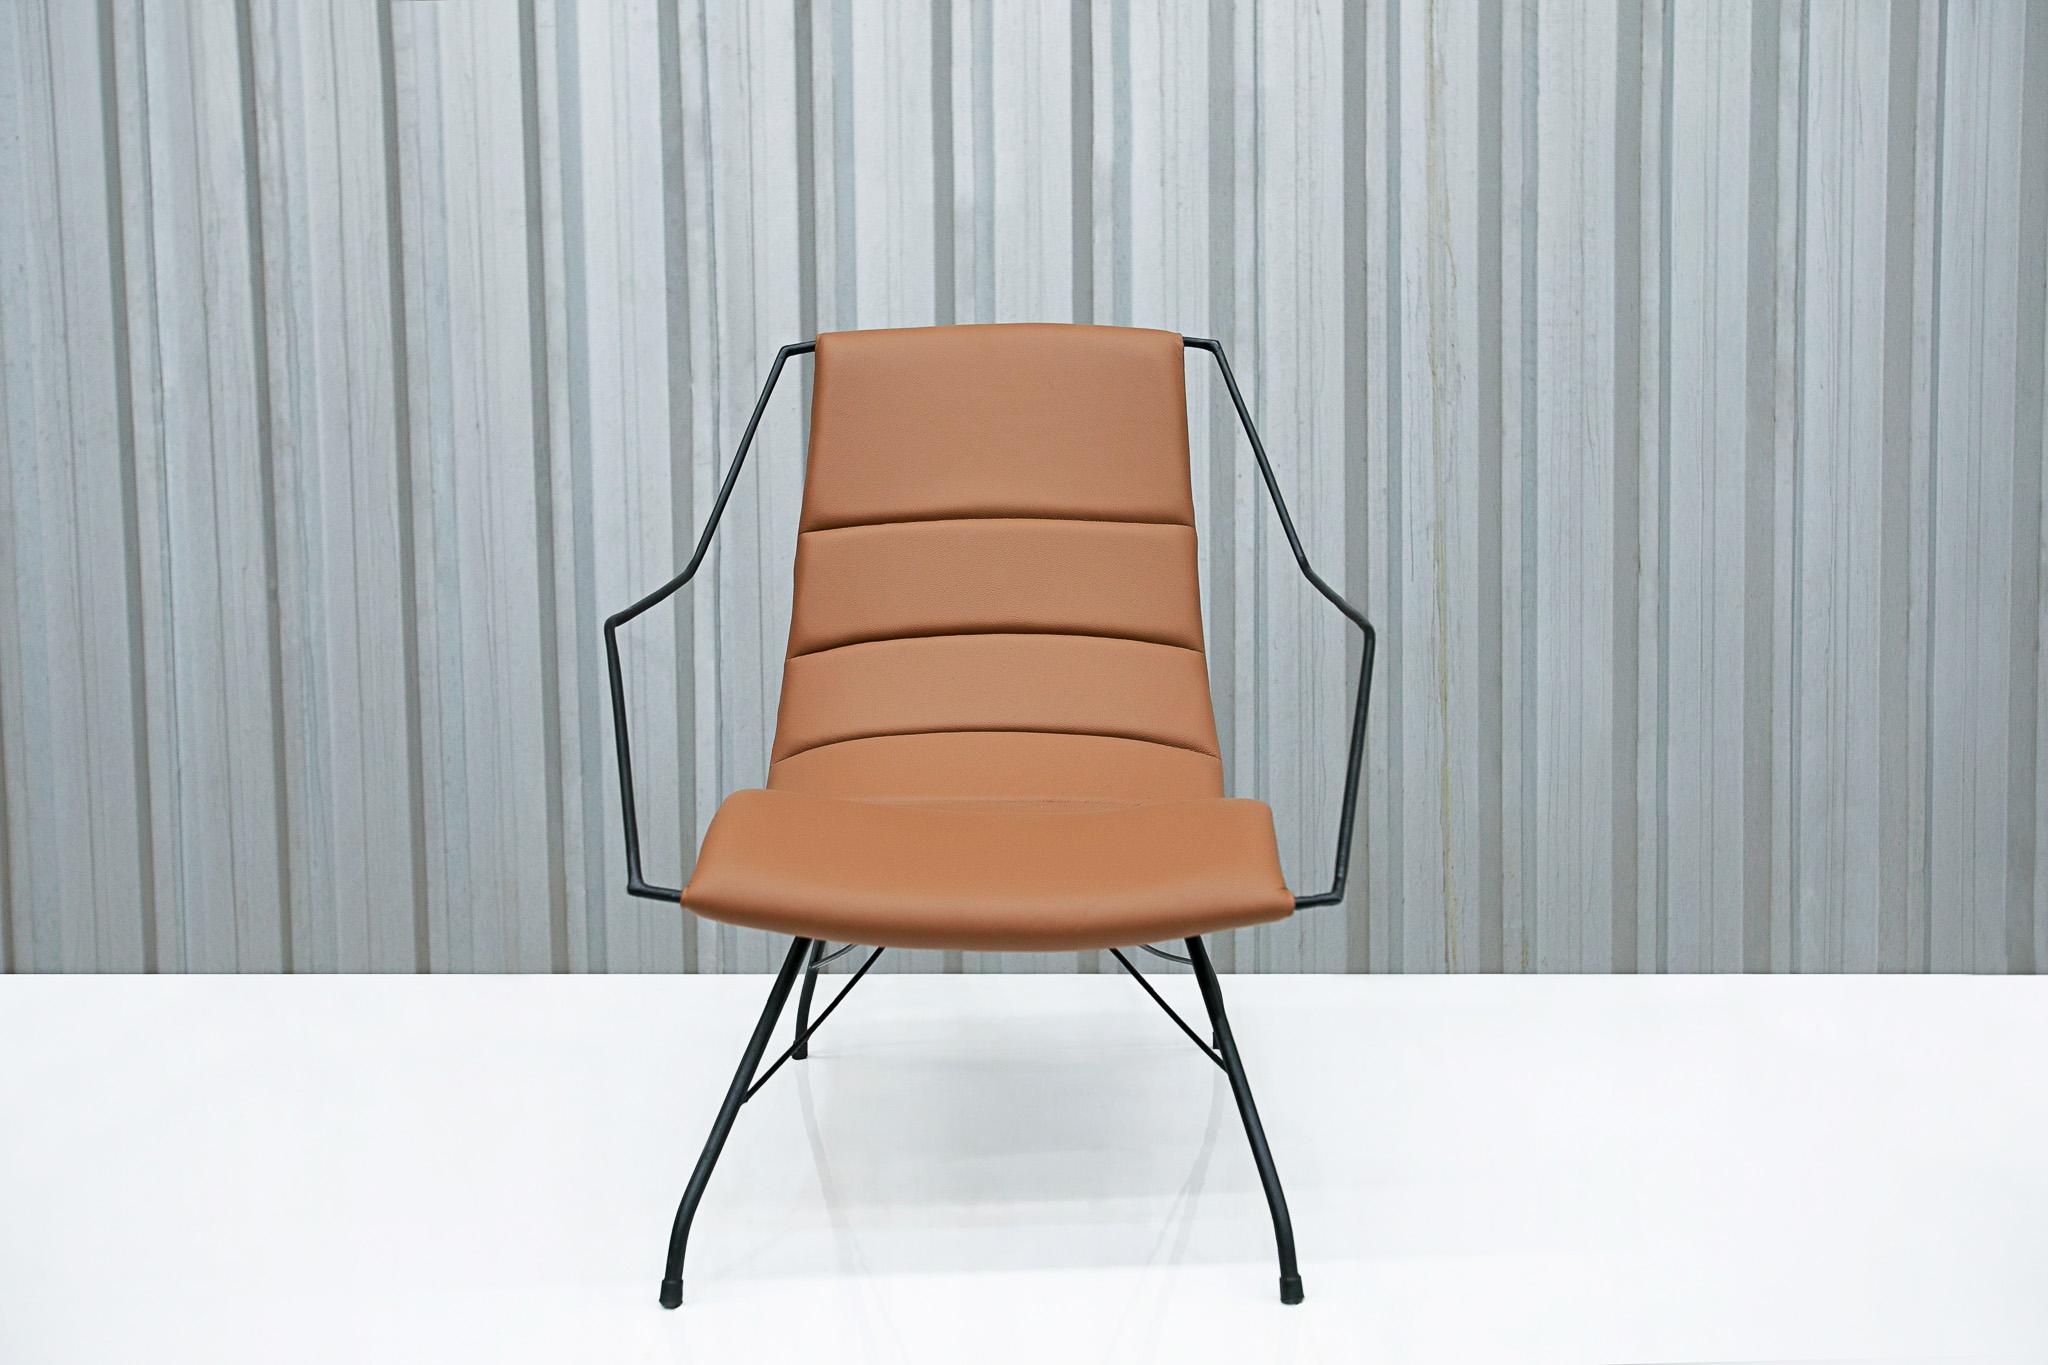 Disponible aujourd'hui, ce fauteuil moderne brésilien en cuir brun et fer, réalisé par Carlo Hauner au Brésil dans les années 50, est unique en son genre !

Ce design populaire (à l'époque) suit le même modèle que les fauteuils 